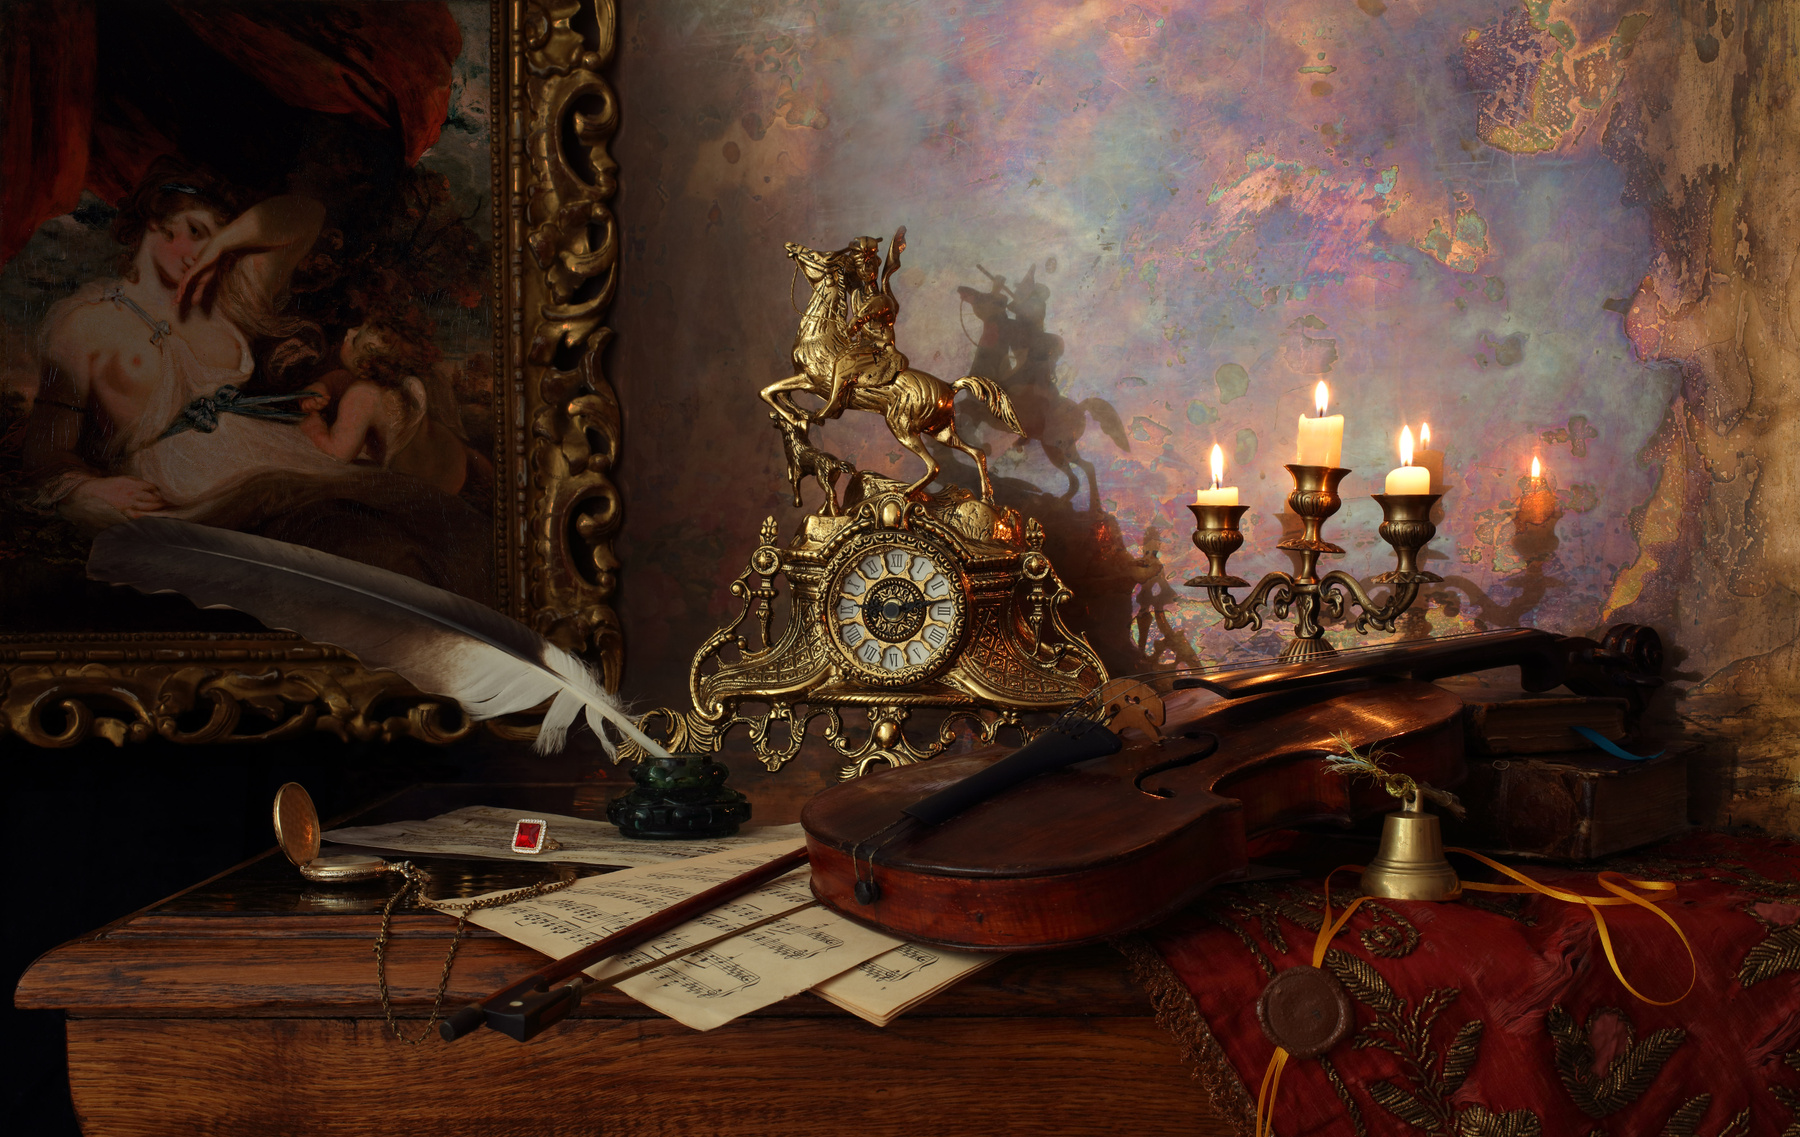 Натюрморт из серии "Галантный век" скрипка свечи картина часы свет музыка